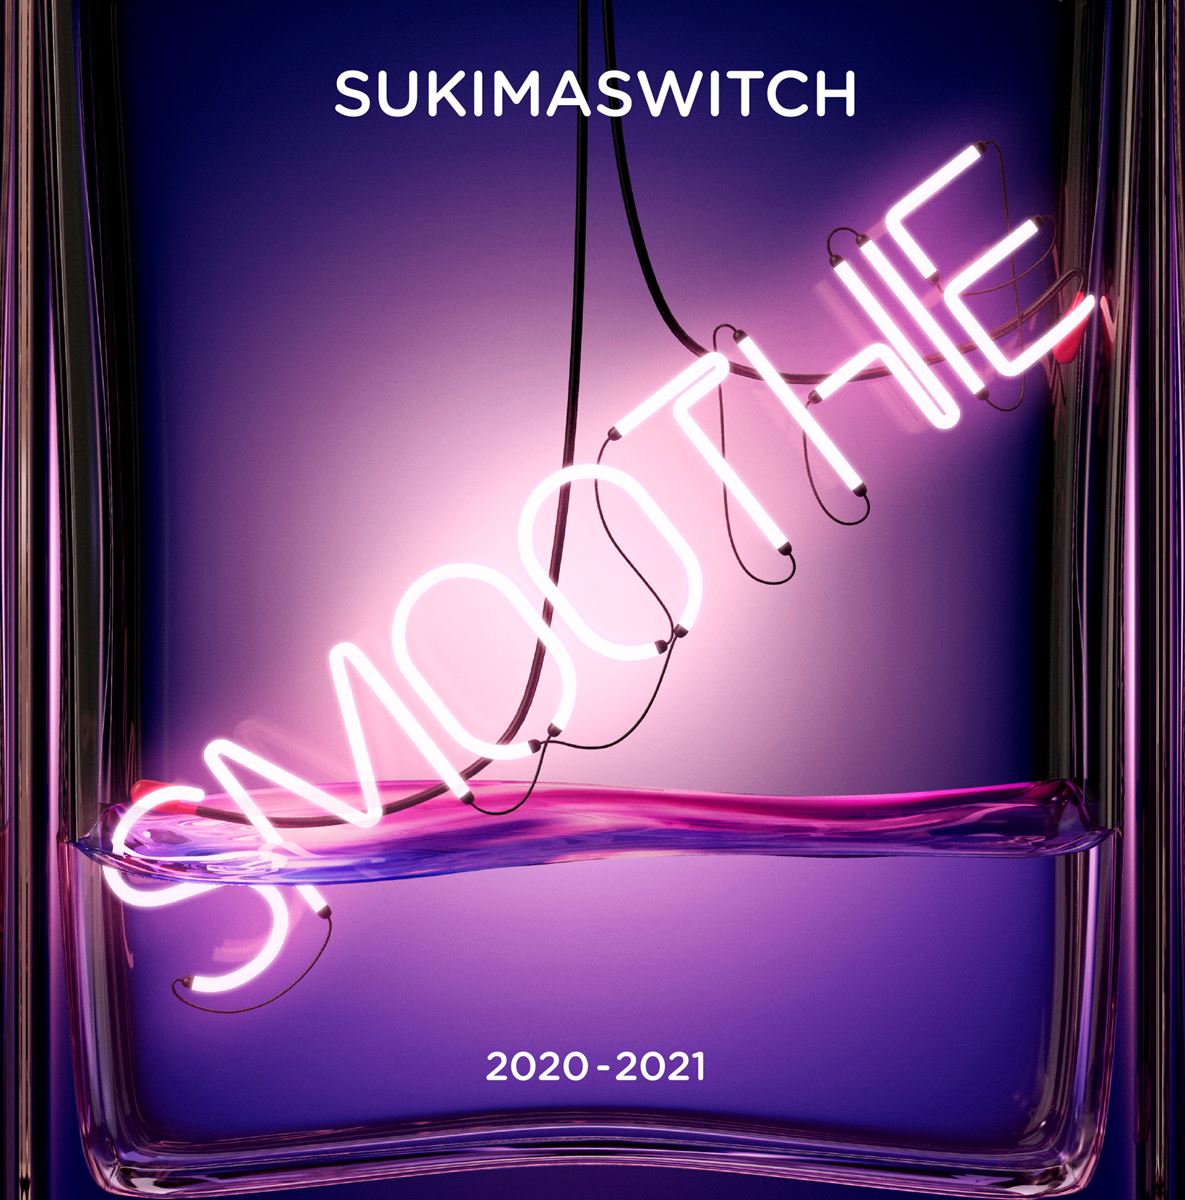 『スキマスイッチ TOUR 2020-2021 Smoothie』